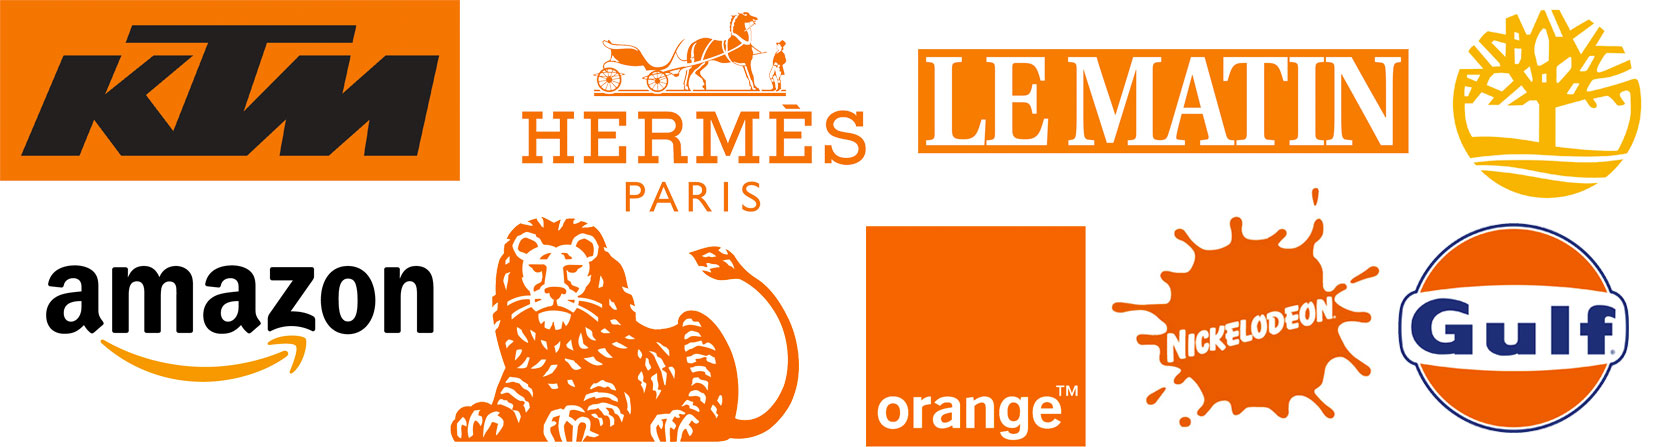 Orange Logos